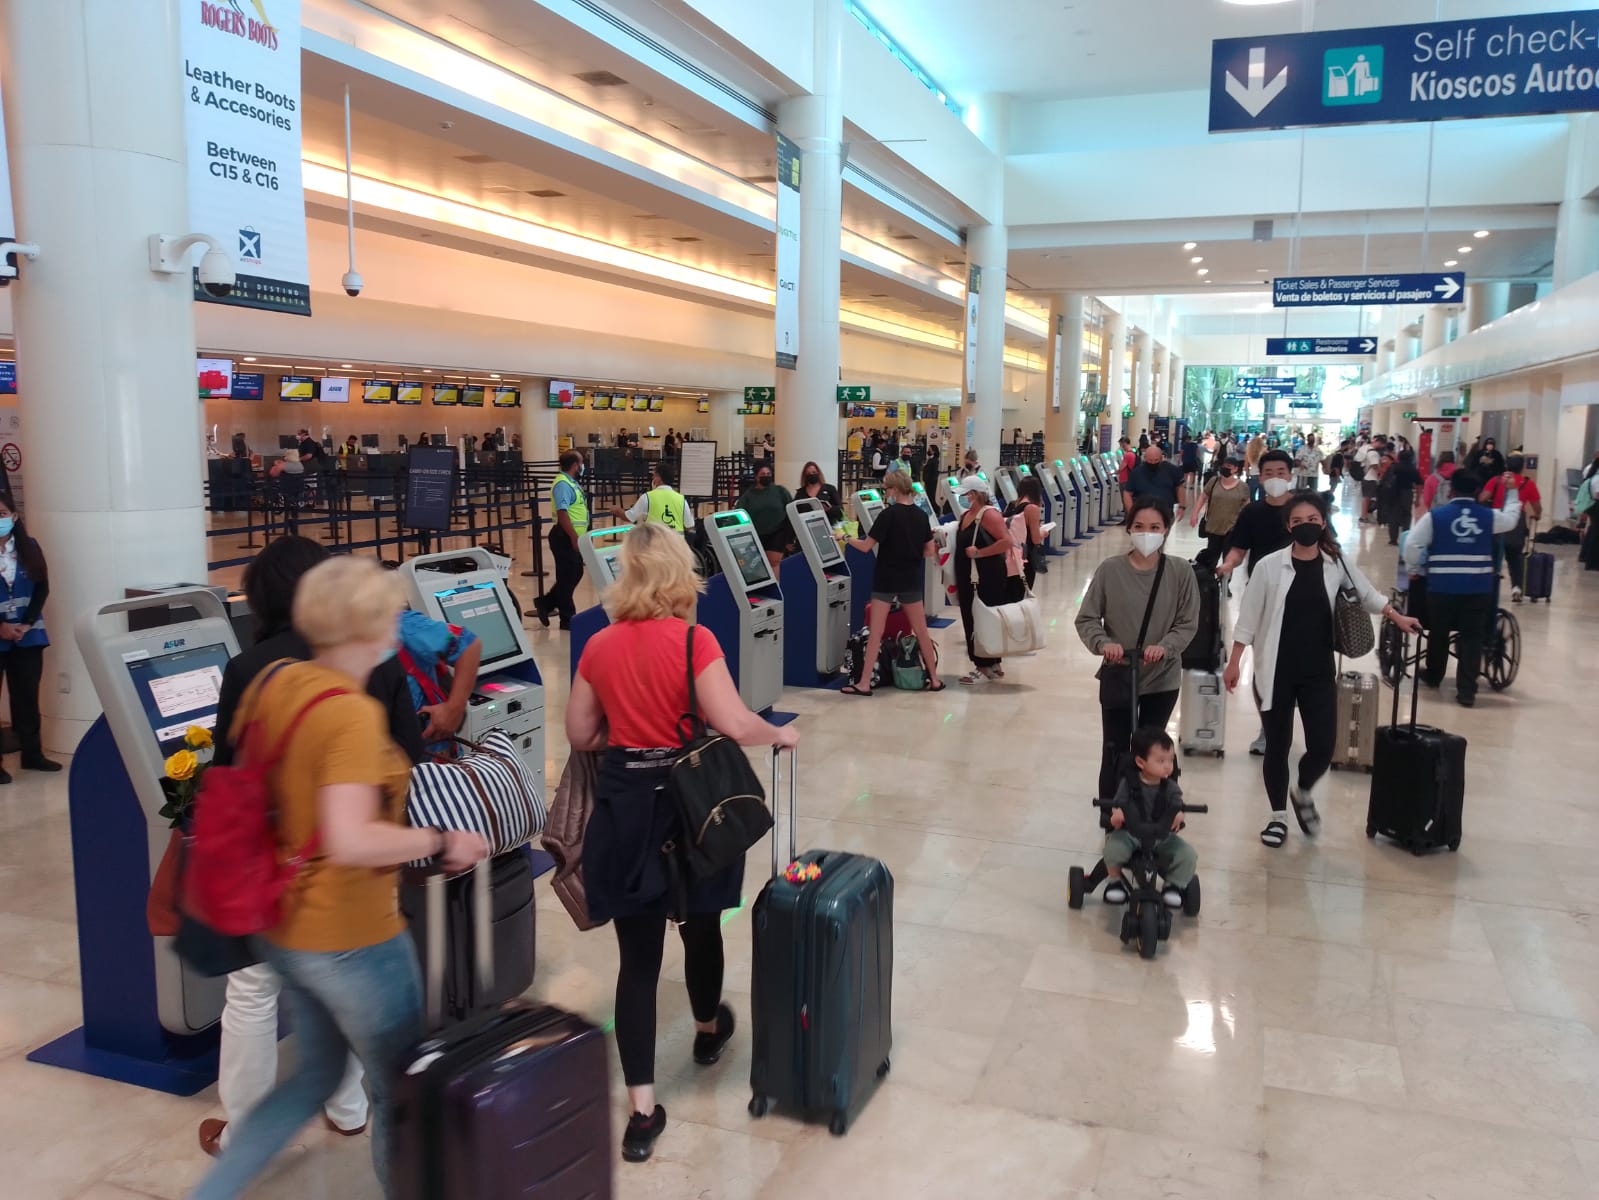 Aeropuerto de Cancún registra cuatro vuelos retrasados este Día del Maestro